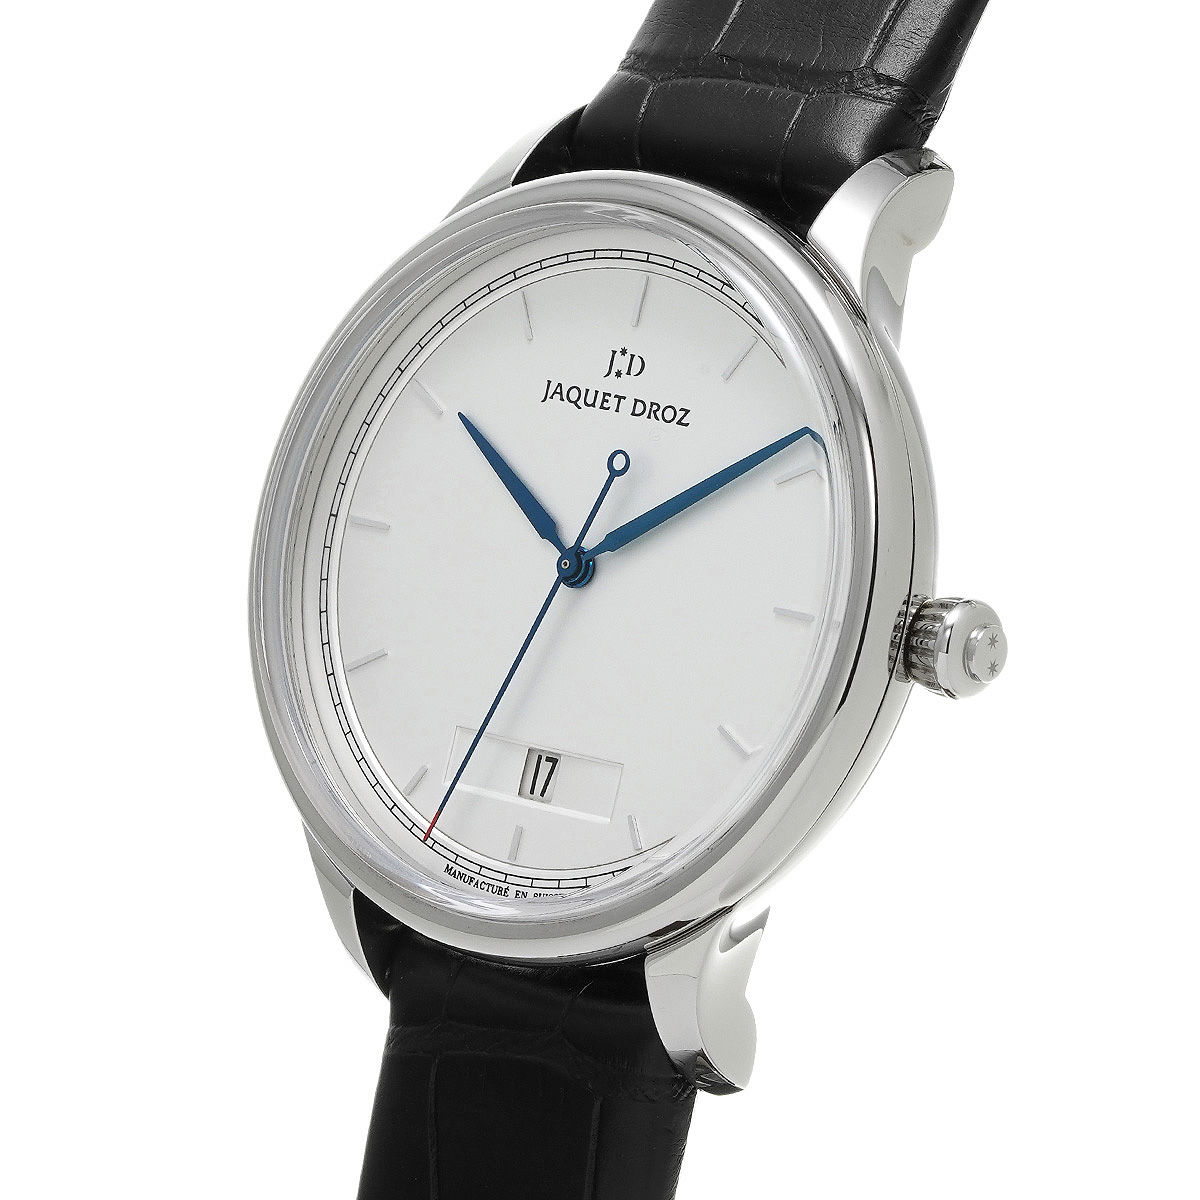 ジャケ ドロー ジャケ・ドロー グラン ウール J017510240 ホワイト メンズ 時計 【中古】【wristwatch】